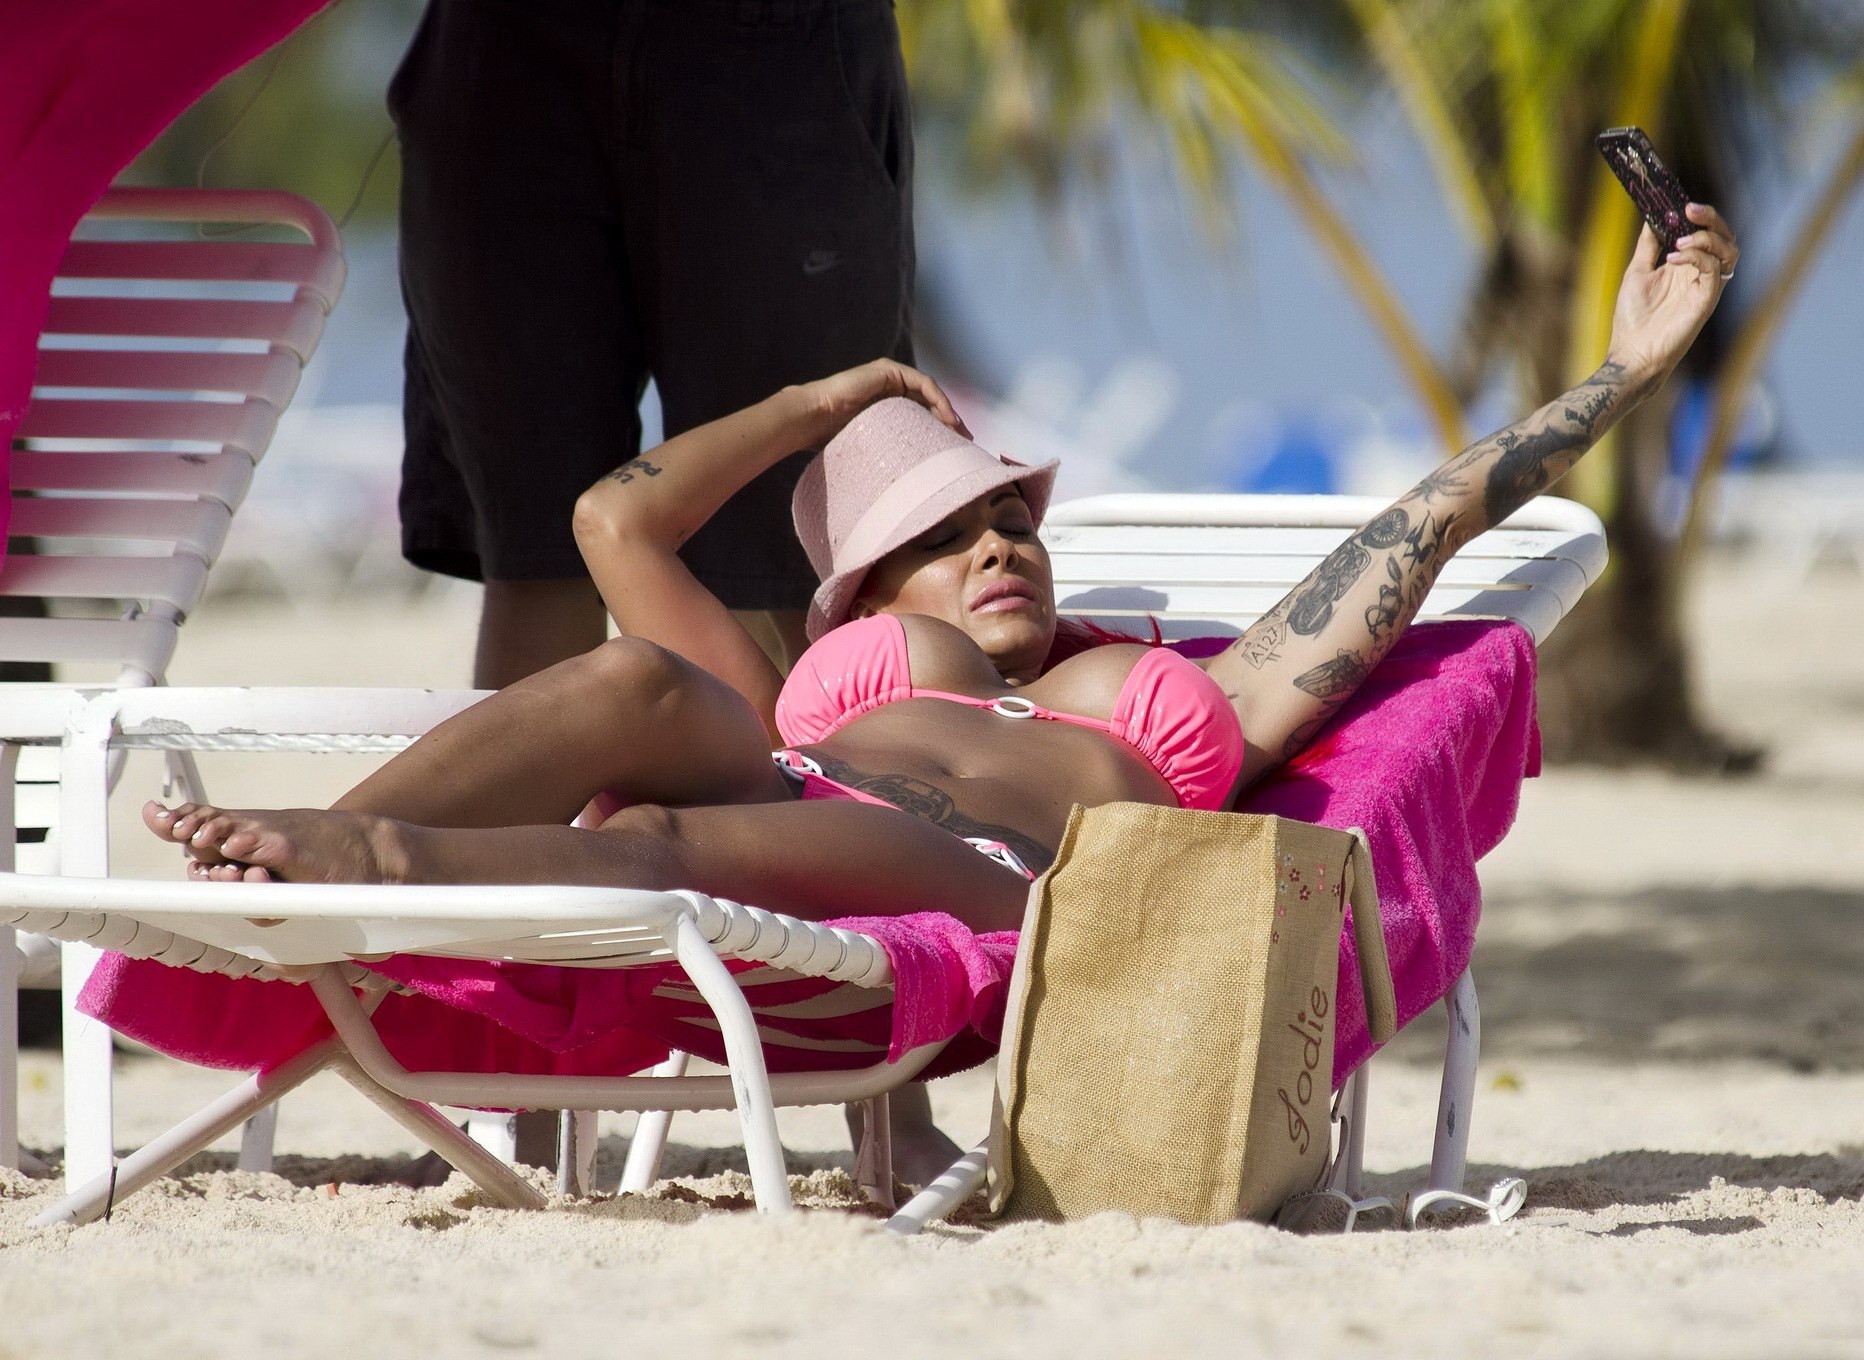 La plantureuse Jodie Marsh en bikini rose sur une plage de la Barbade.
 #75245359